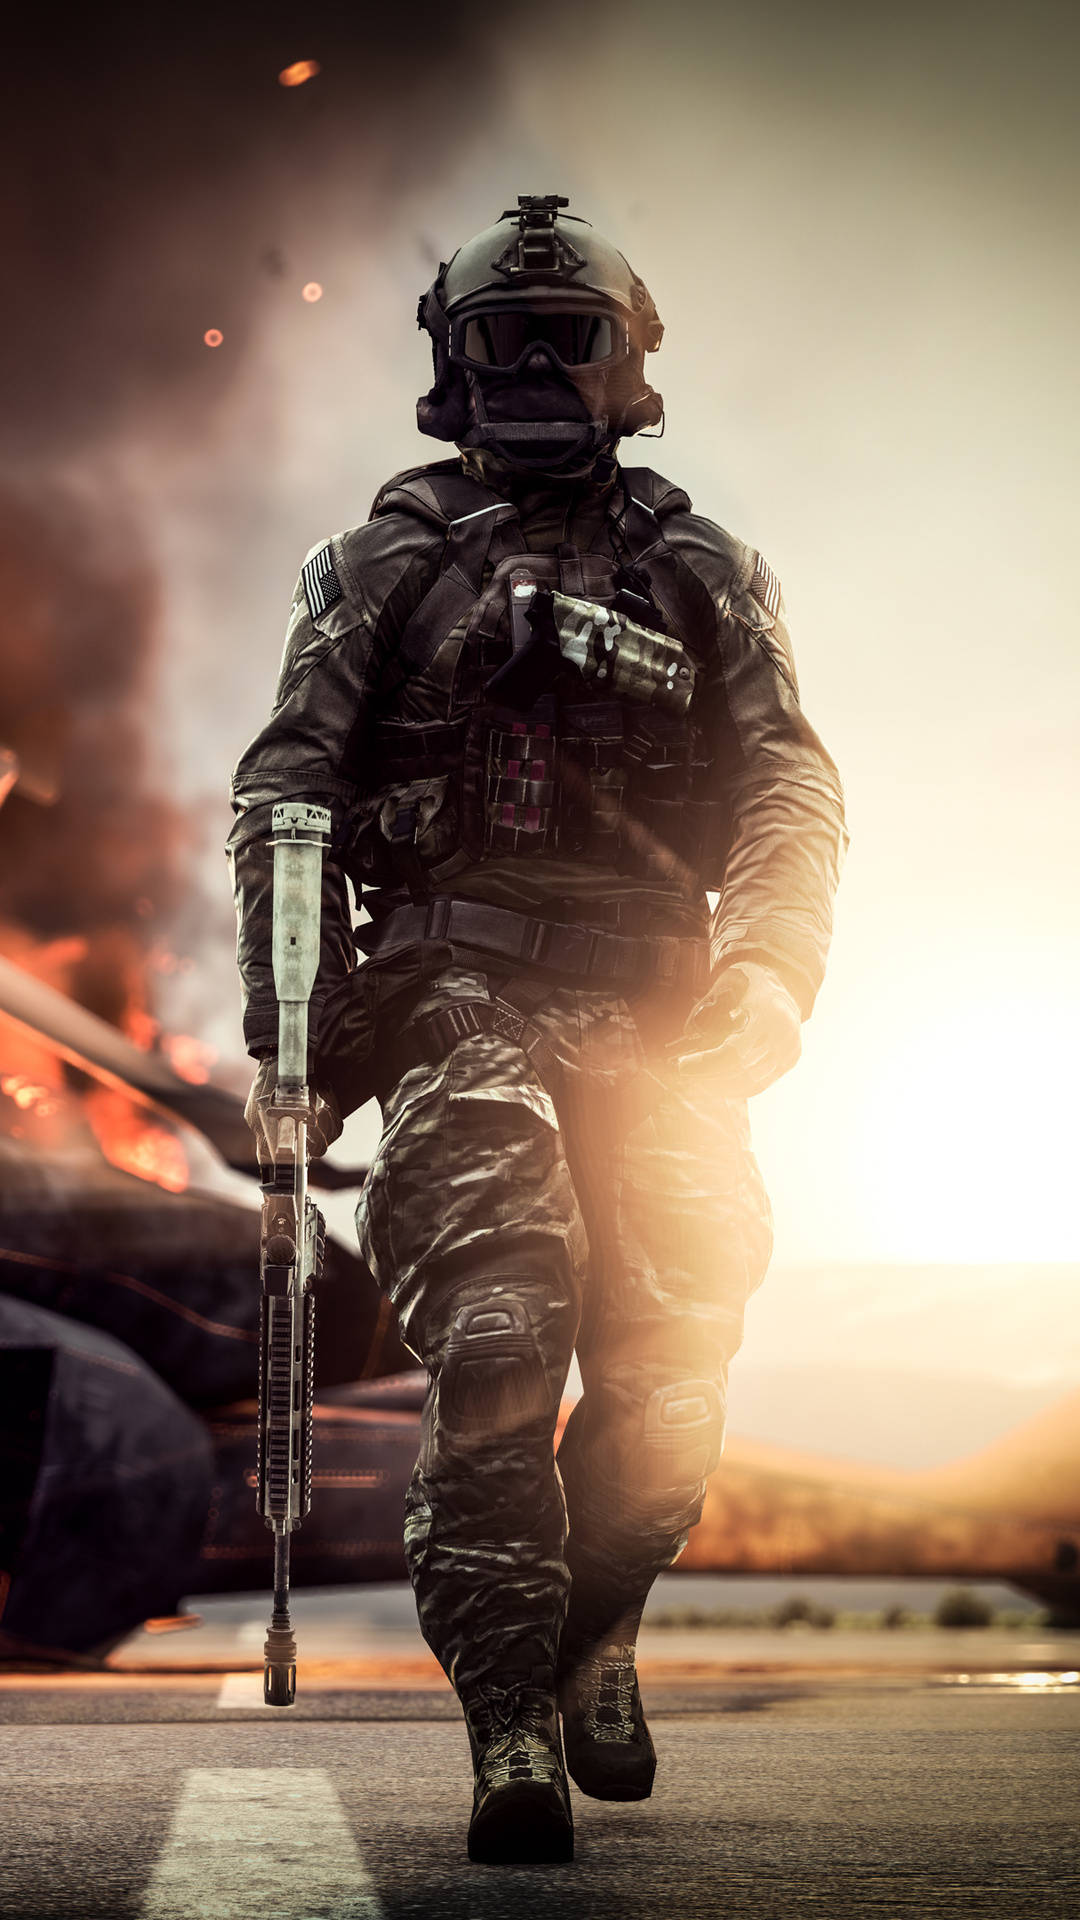 Fundode Tela Para Celular: Soldado Caminhando Com Equipamento Completo Em Battlefield 4. Papel de Parede